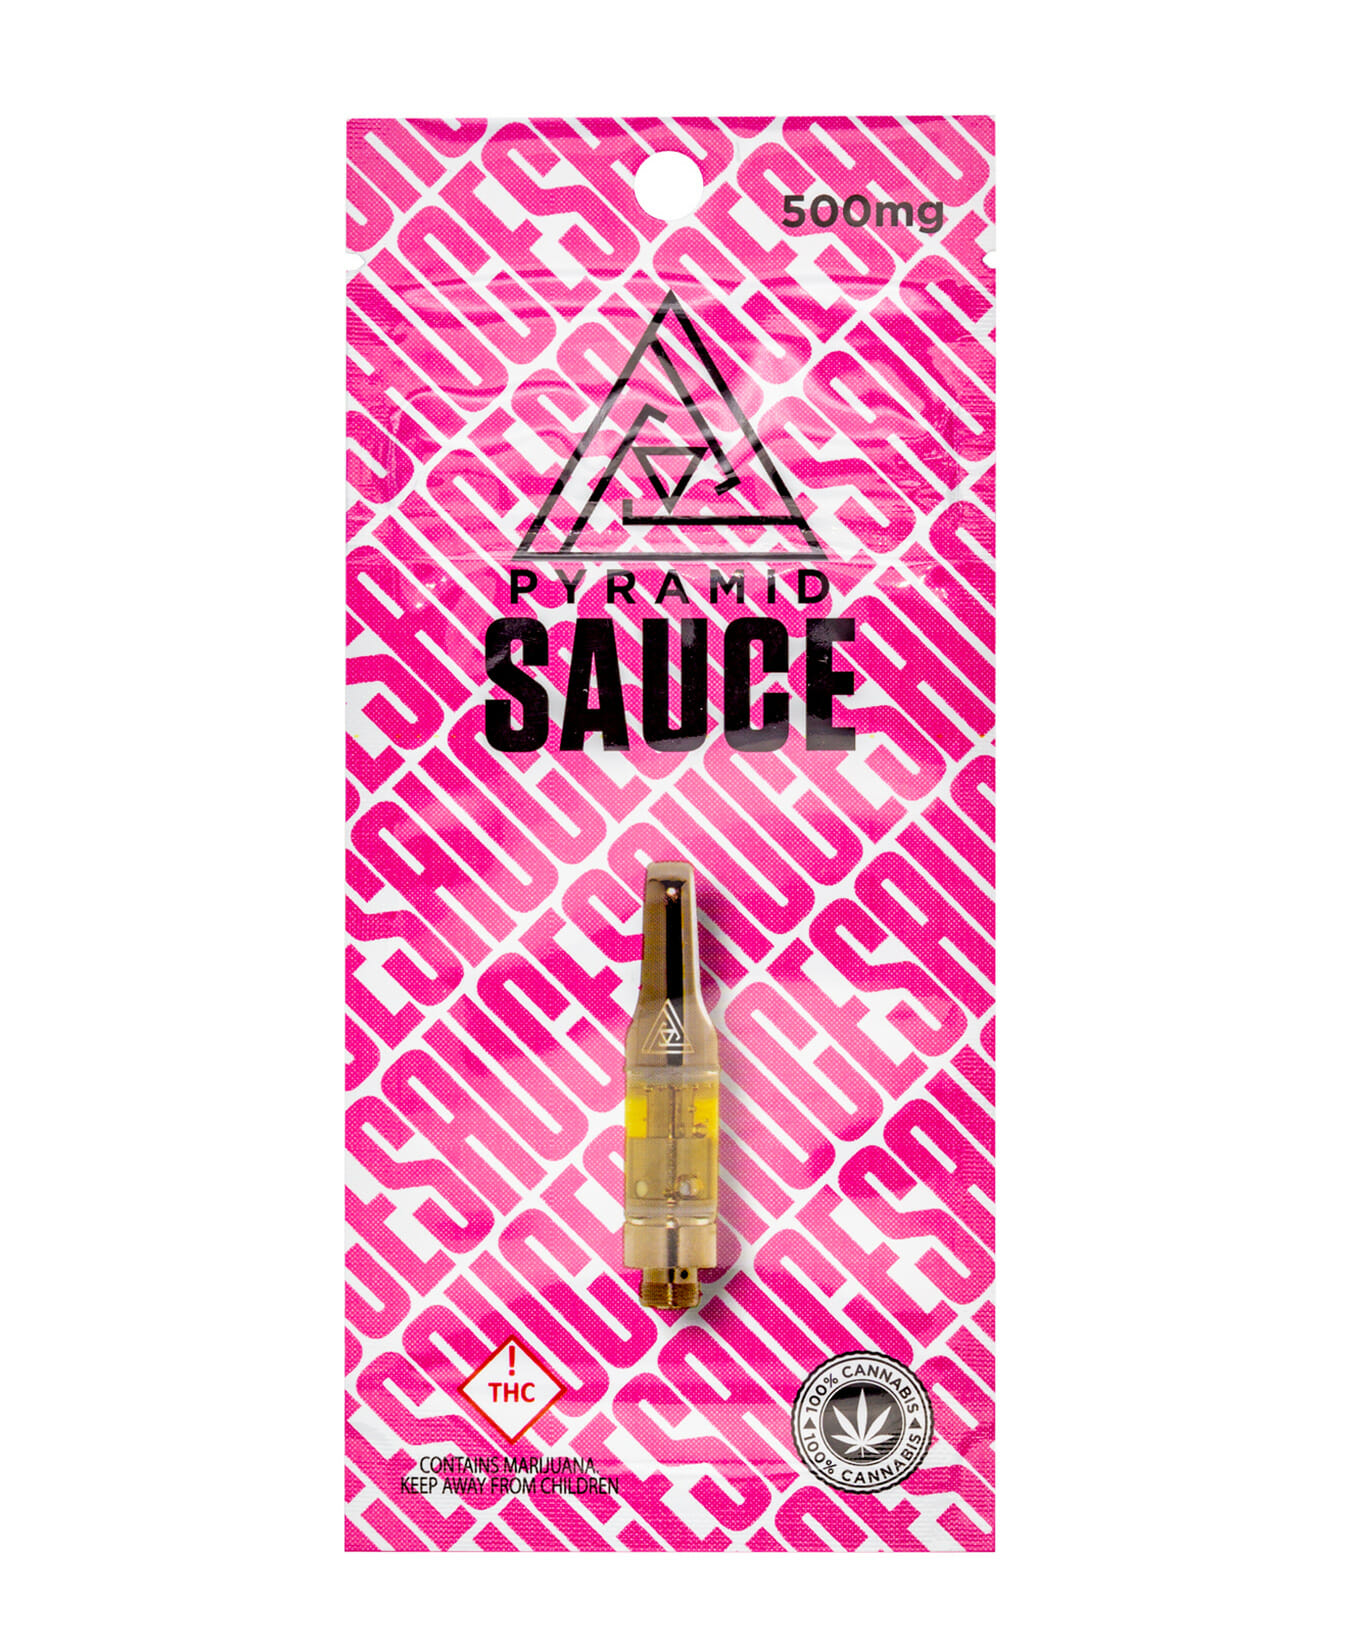 Pyramid Sauce Cartridge